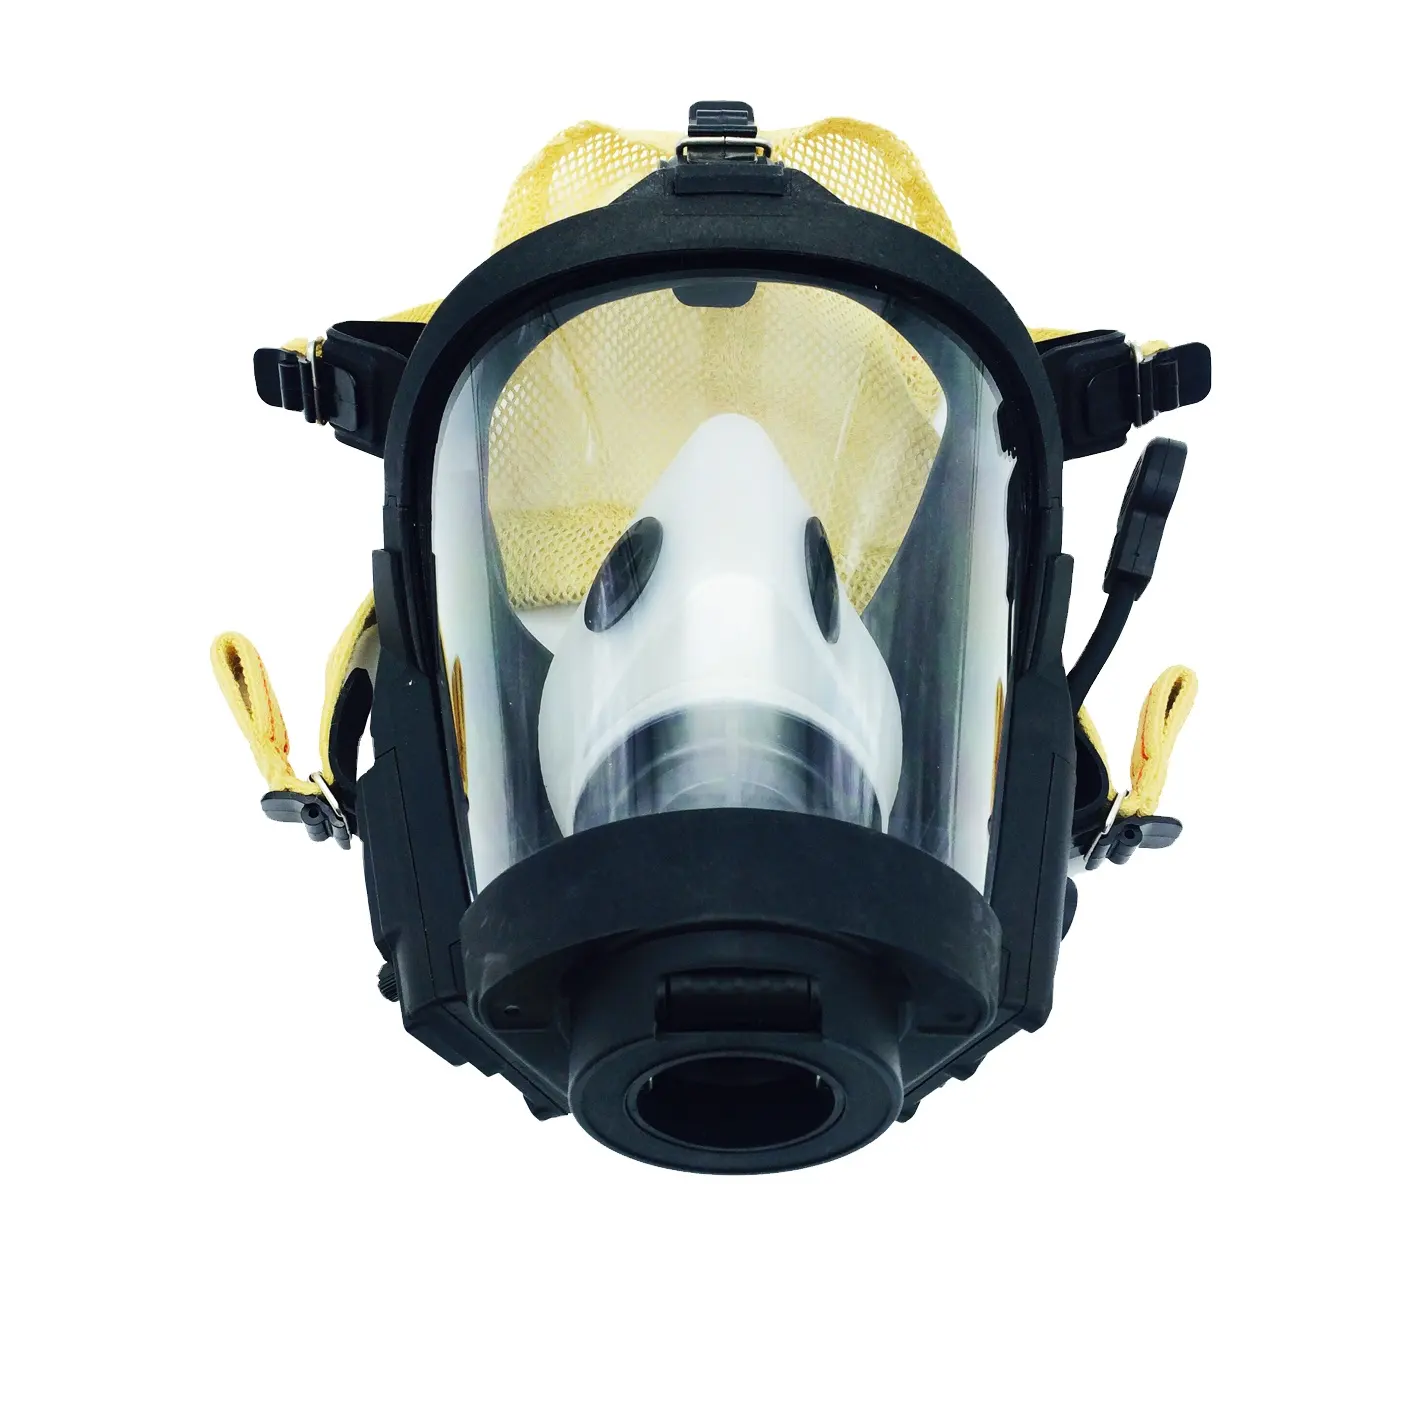 प्रीमियम रासायनिक सुरक्षात्मक रेडियो मुखौटा के साथ संचार मुखौटा Aramid headnet